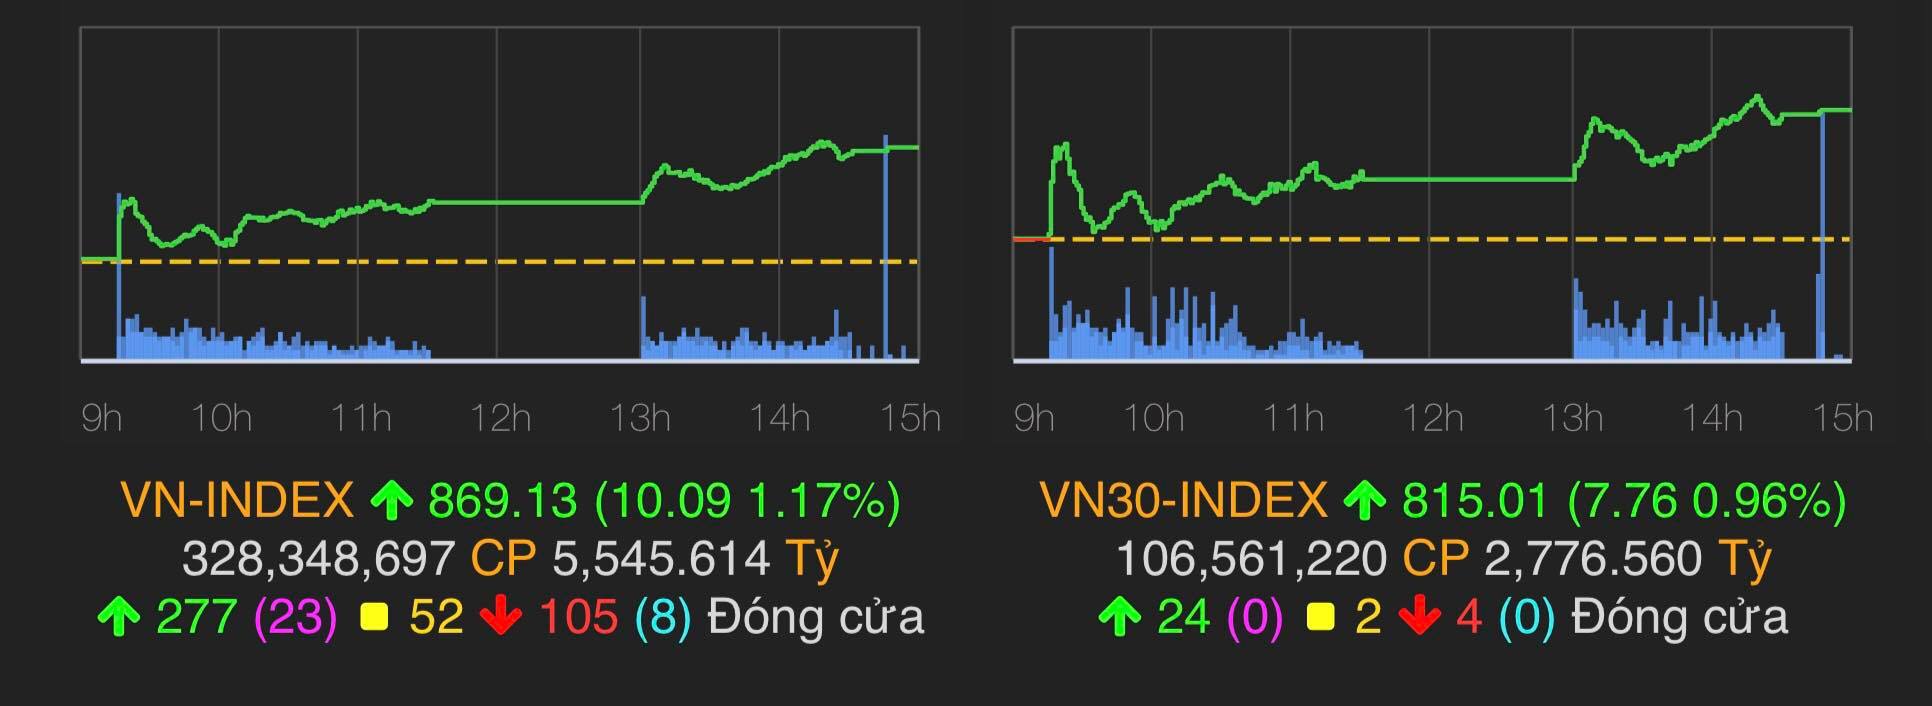 VN-Index tăng 10,09 điểm (1,17%) lên mốc 869,13 điểm.